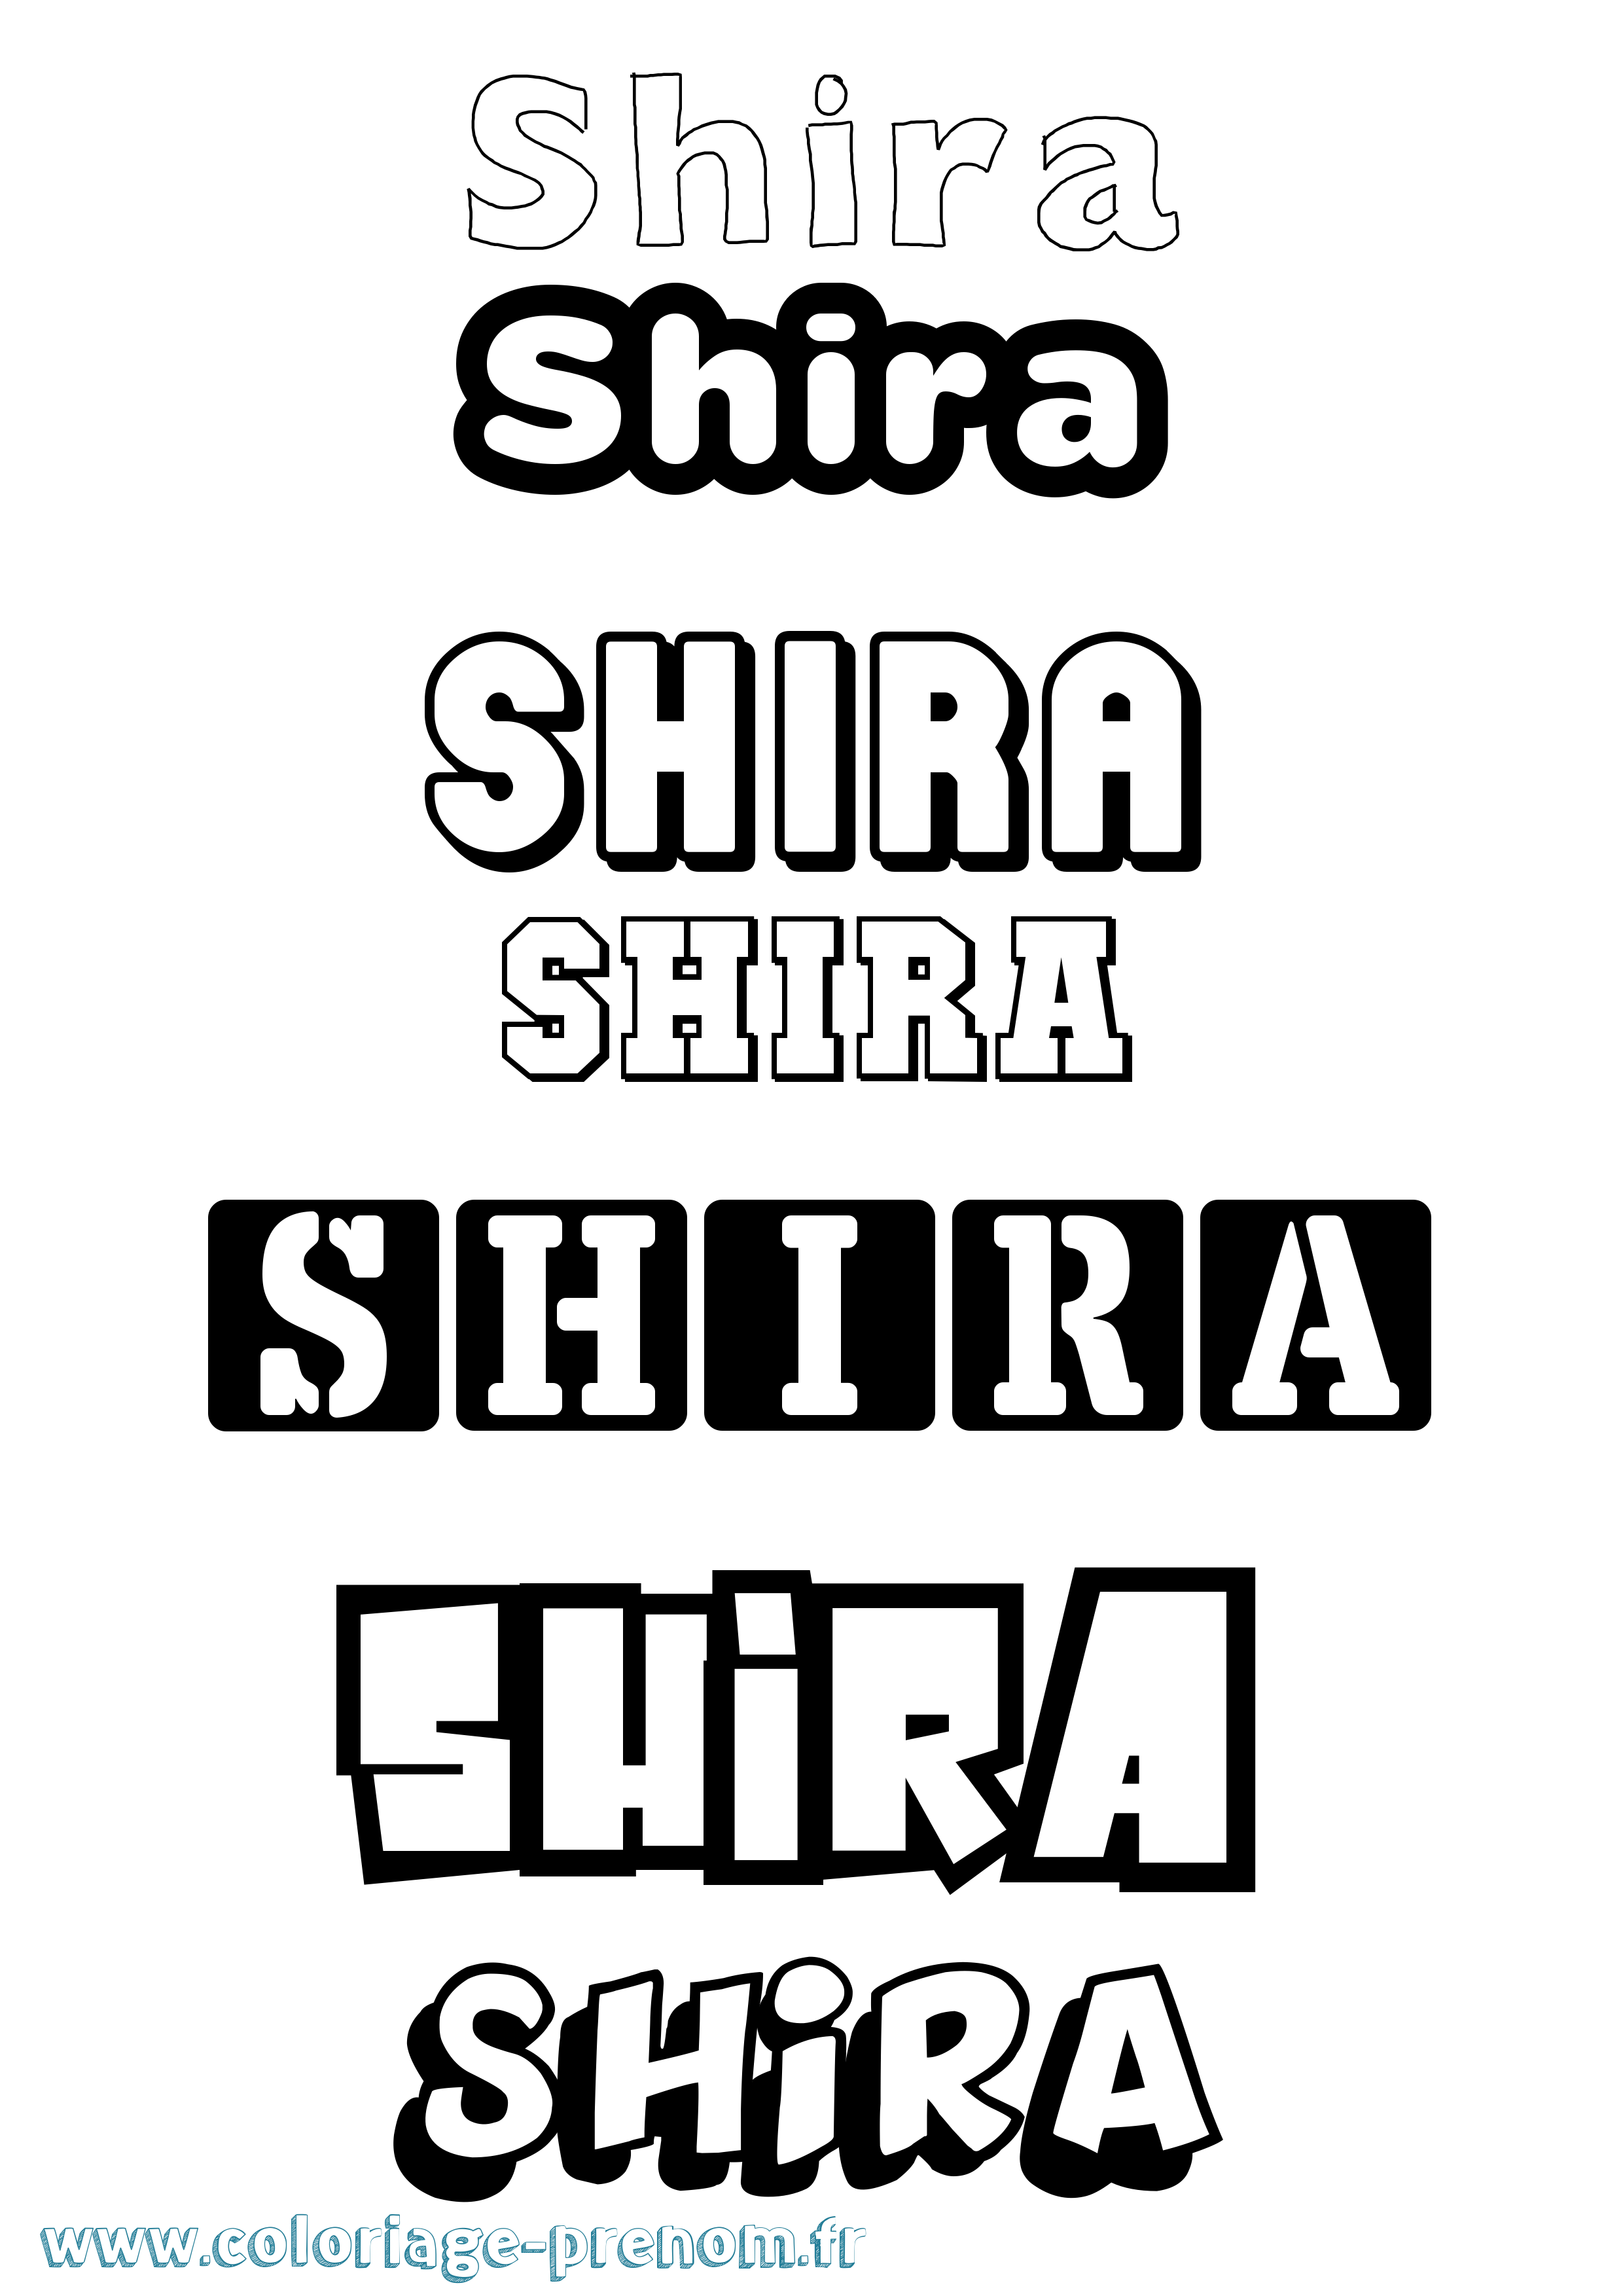 Coloriage prénom Shira Simple